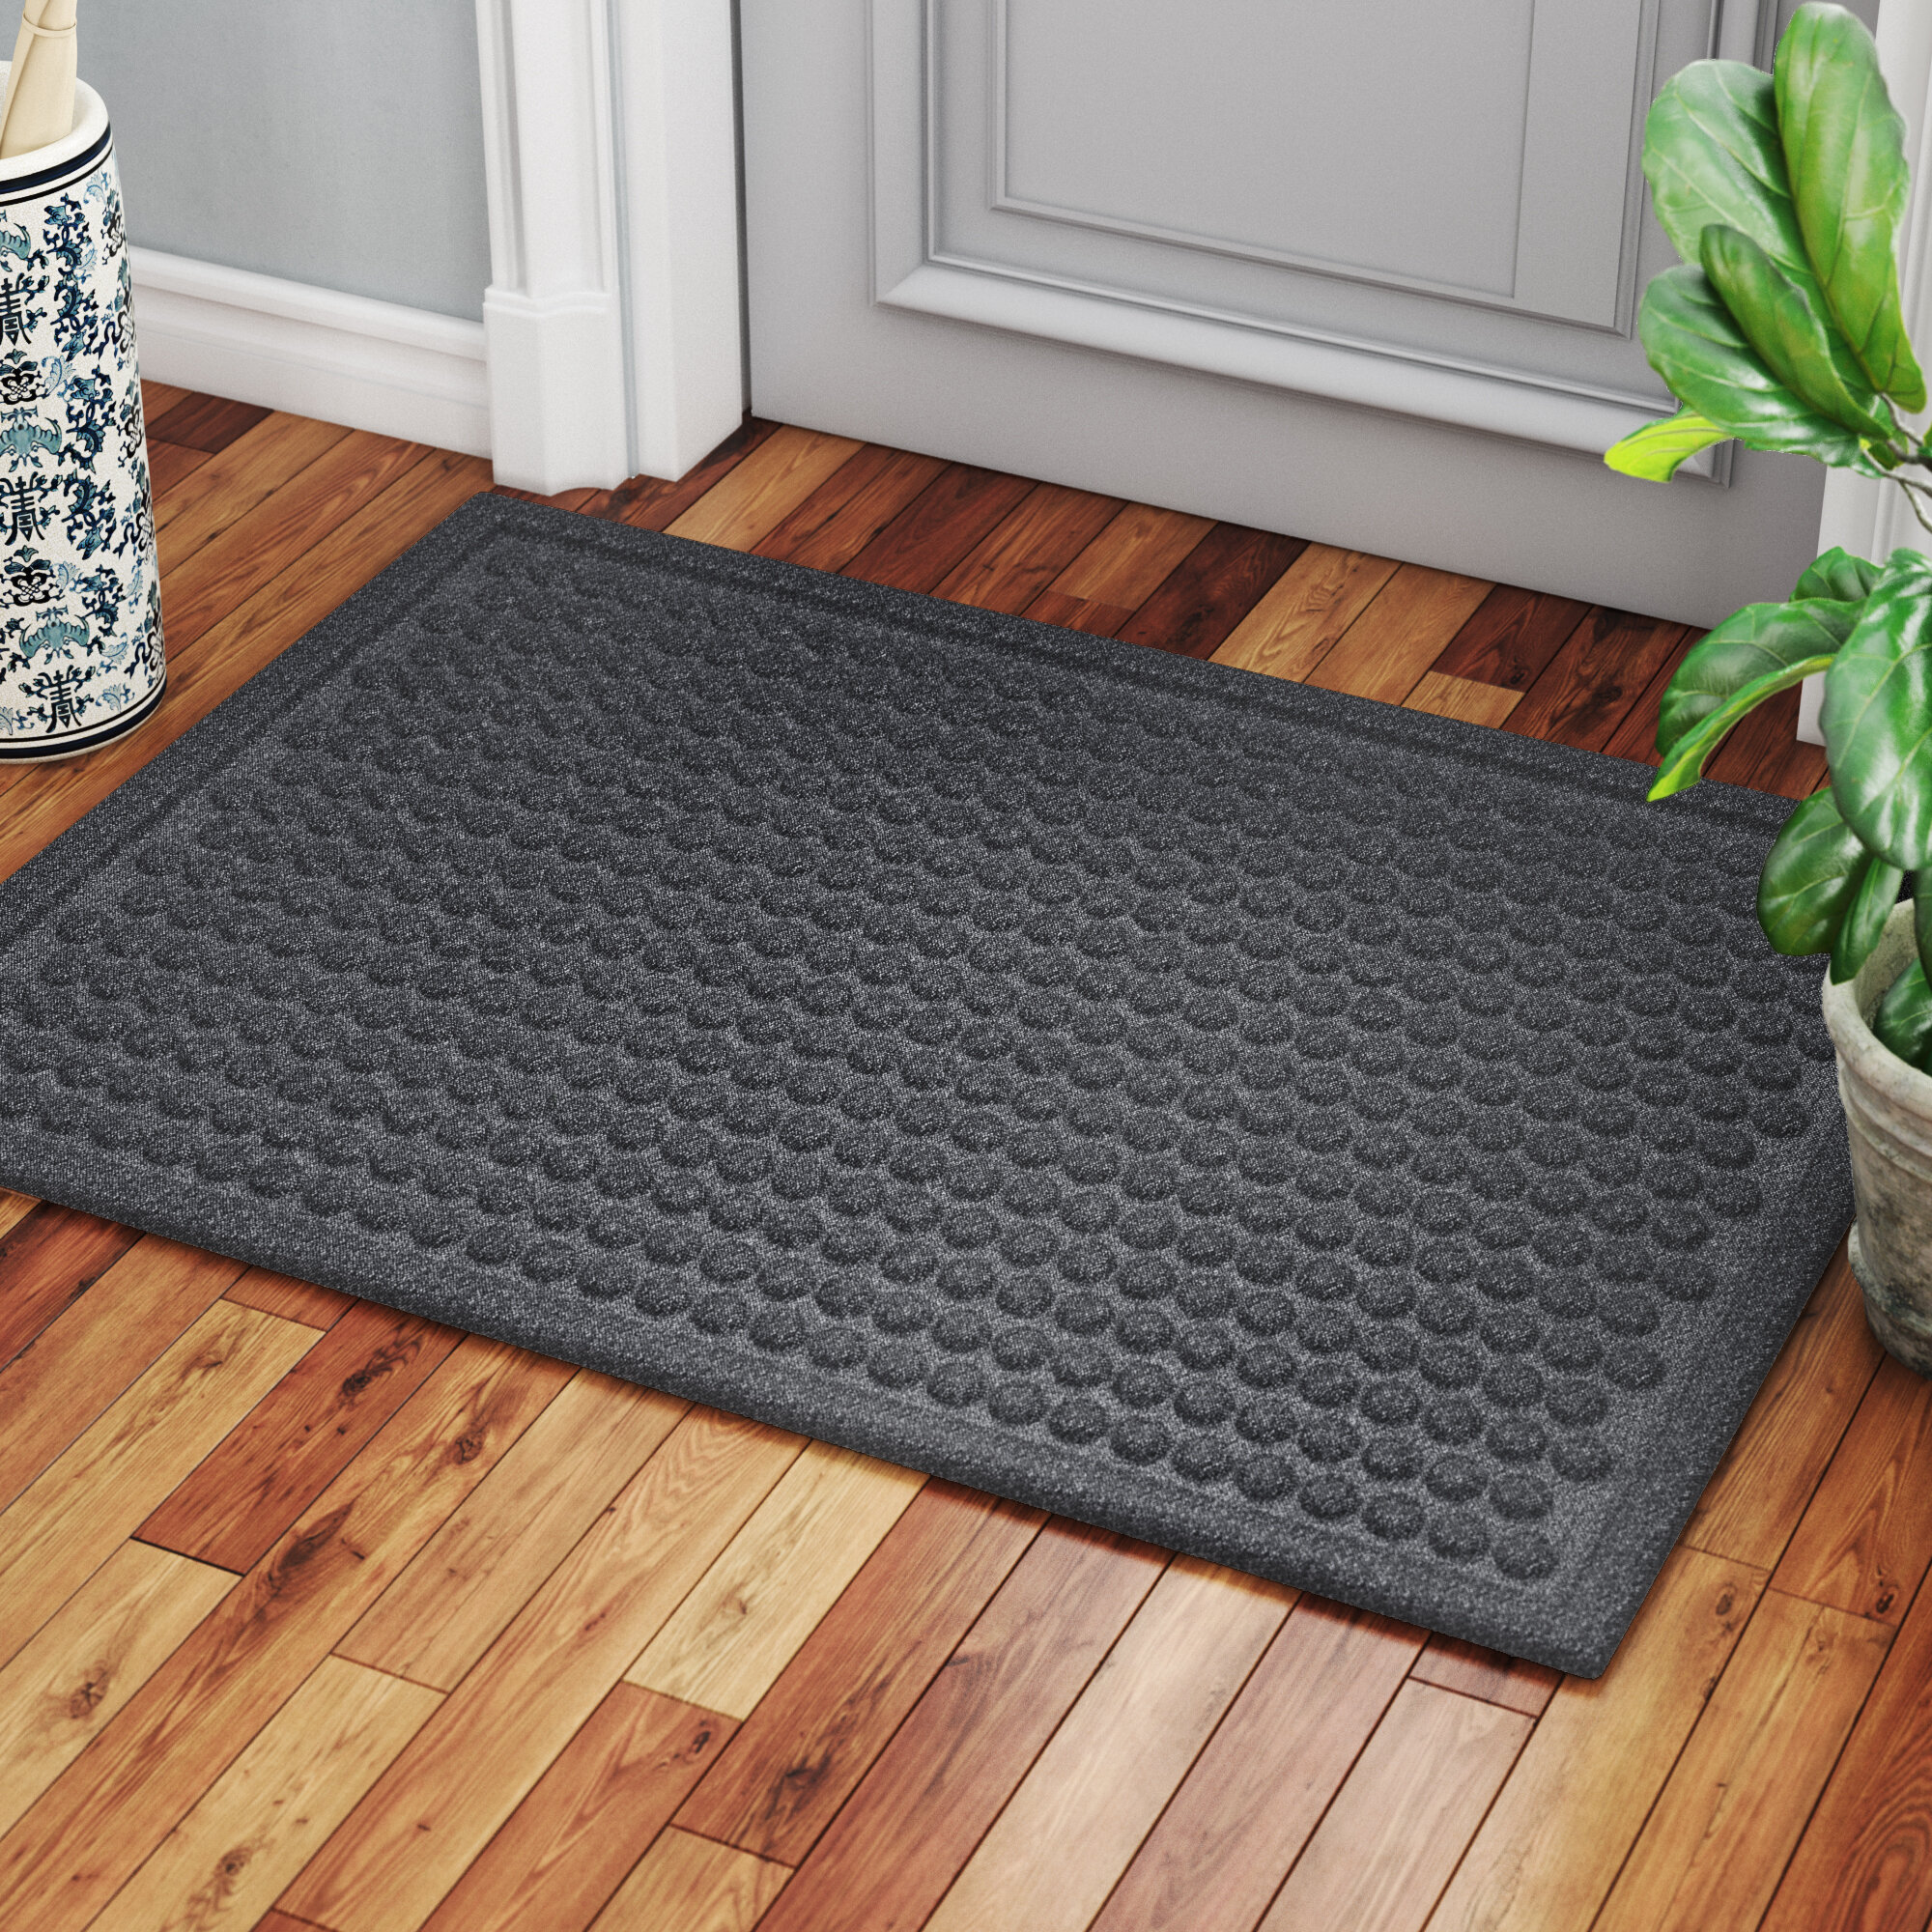 Wayfair | Water Resistant Doormats You'll Love in 2022